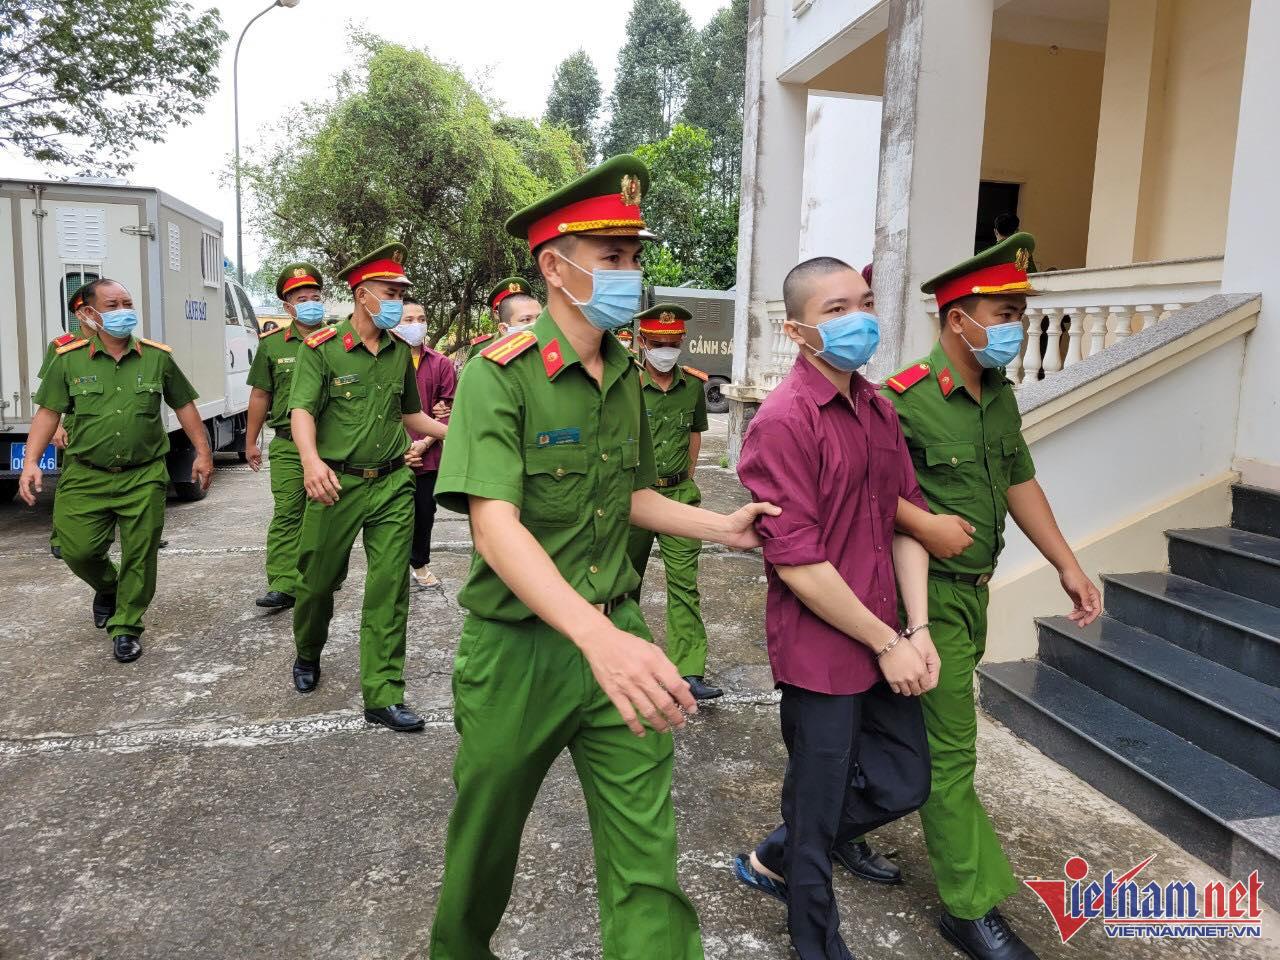 An ninh nghiêm ngặt phiên xử nhóm người ở Tịnh thất Bồng Lai-3